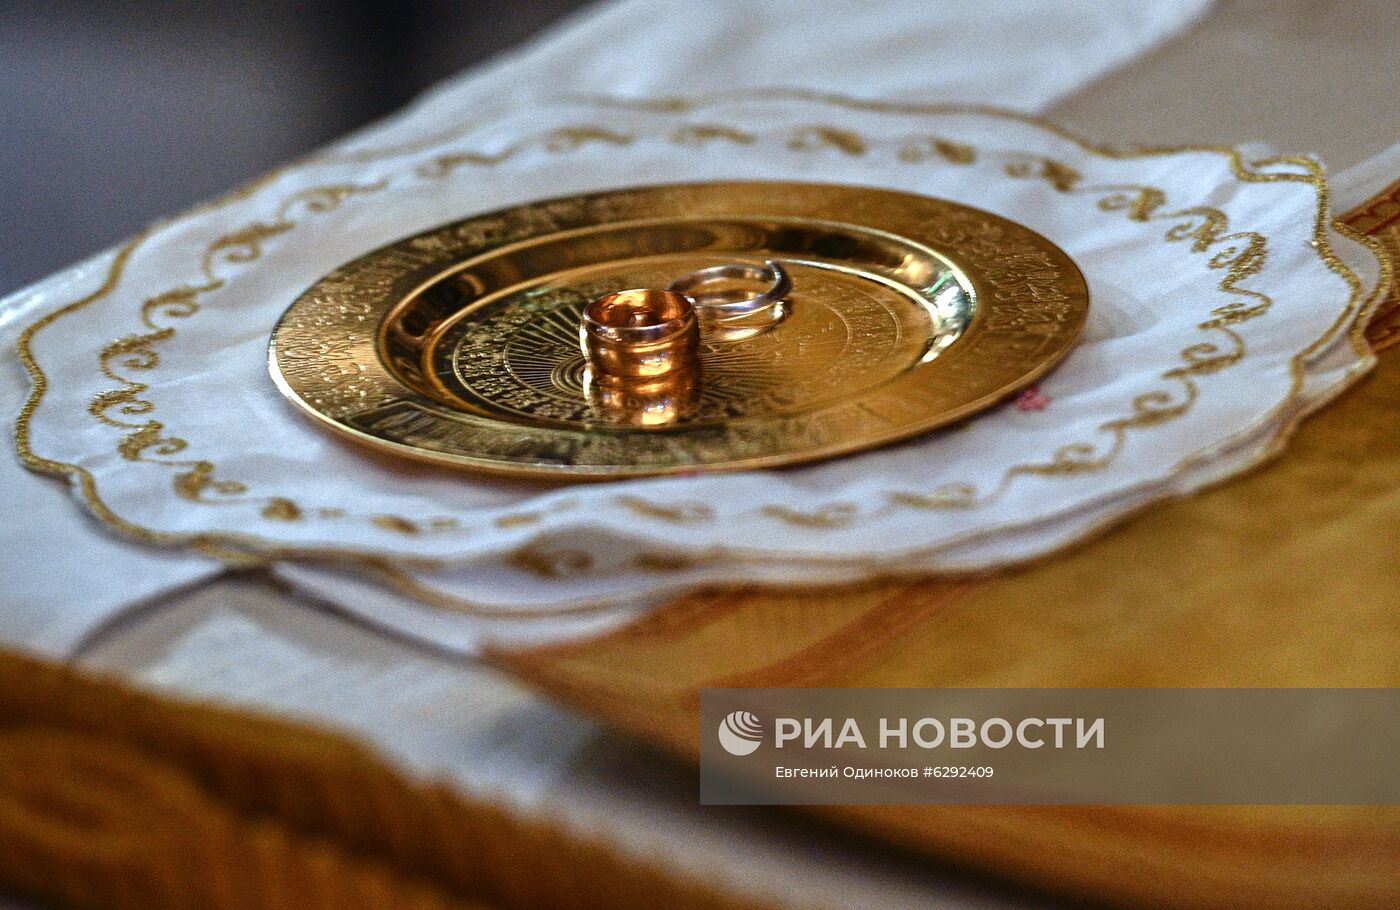 В Главном храме Вооруженных сил России провели первое венчание